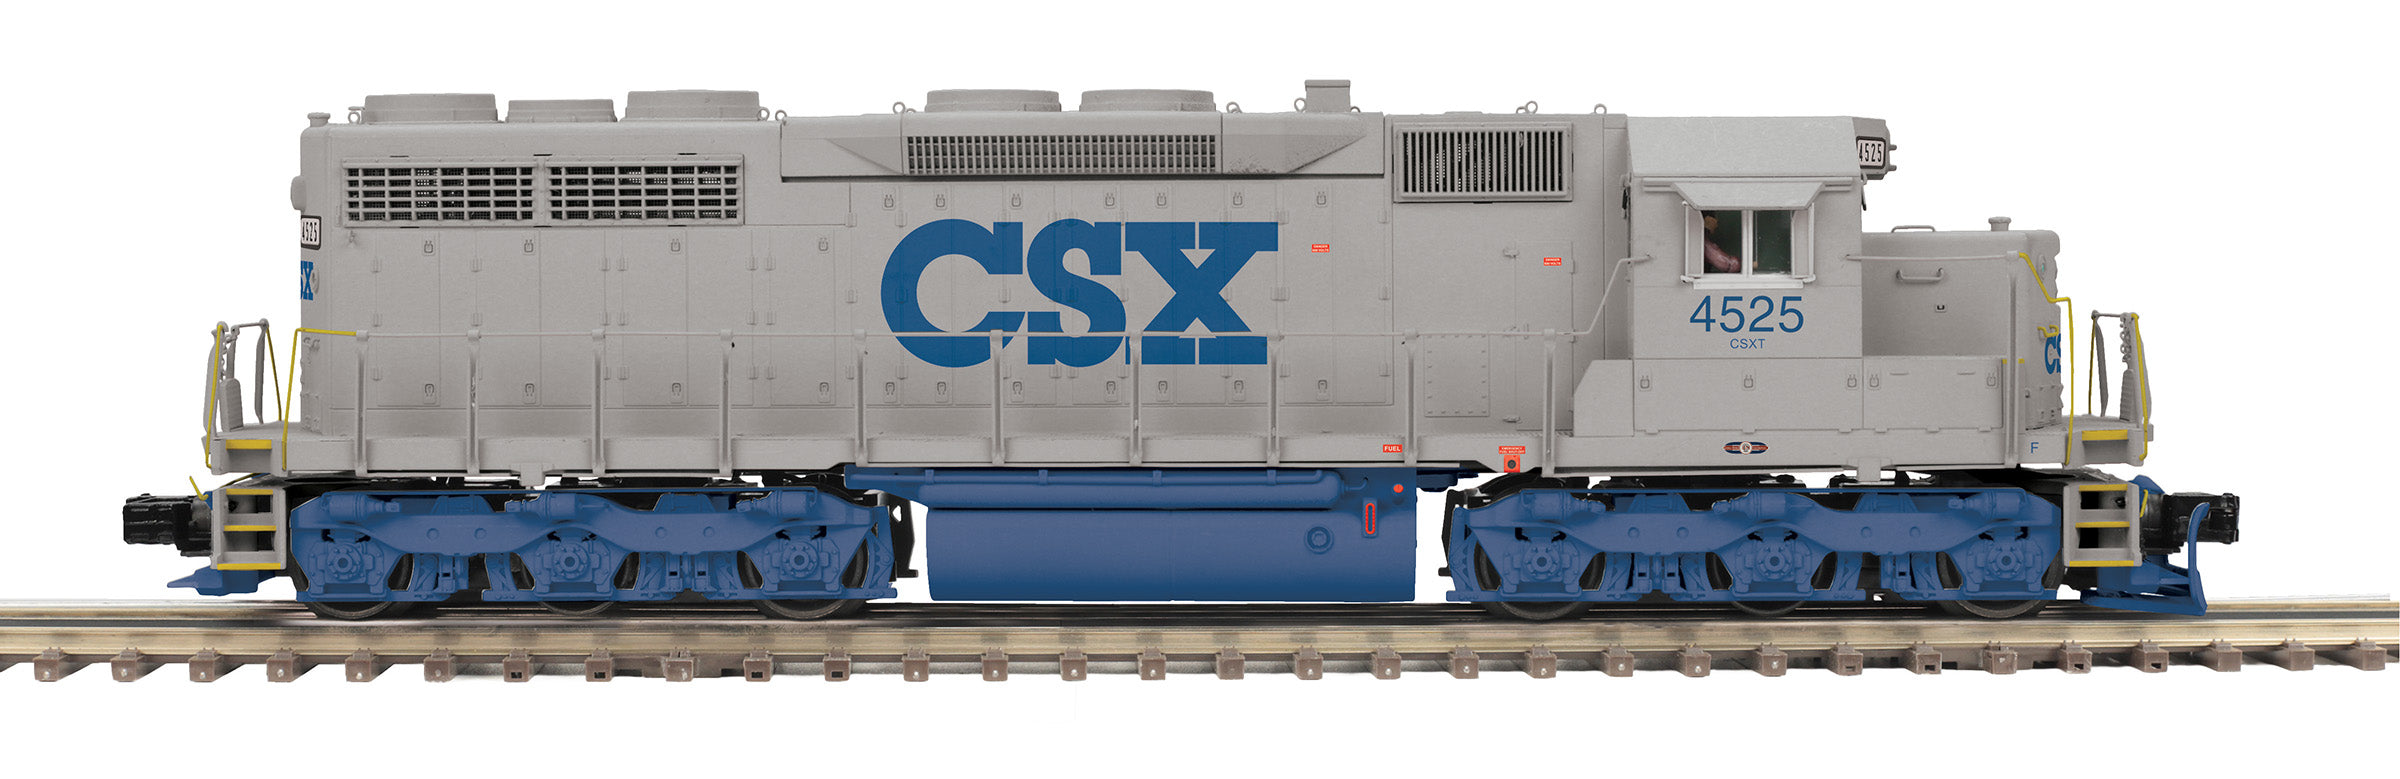 MTH 20-21759-1 - SD-35 Diesel Engine "CSX" #4525 w/ PS3 (Hi-Rail Wheels)